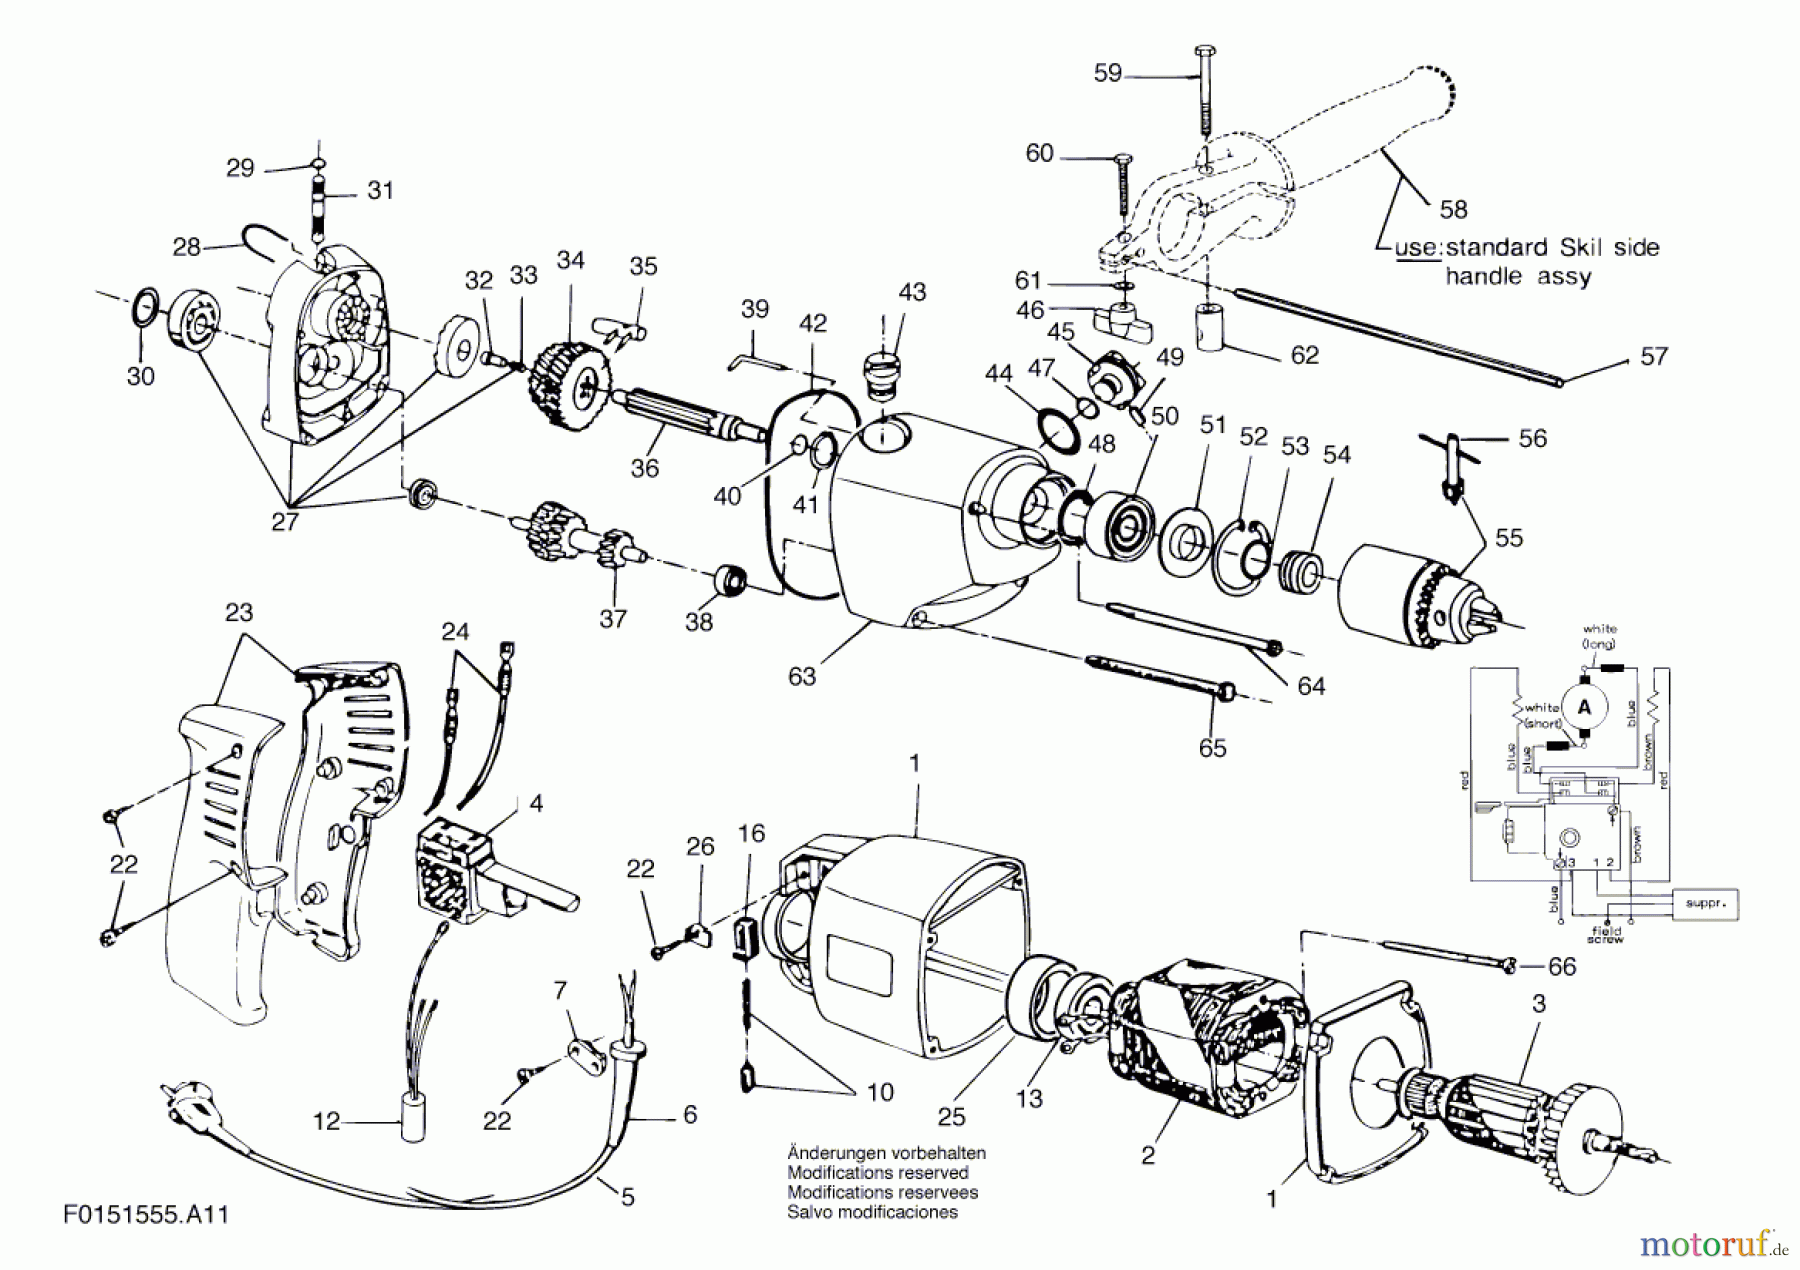  Bosch Werkzeug Bohrmaschine 1555H1 Seite 1